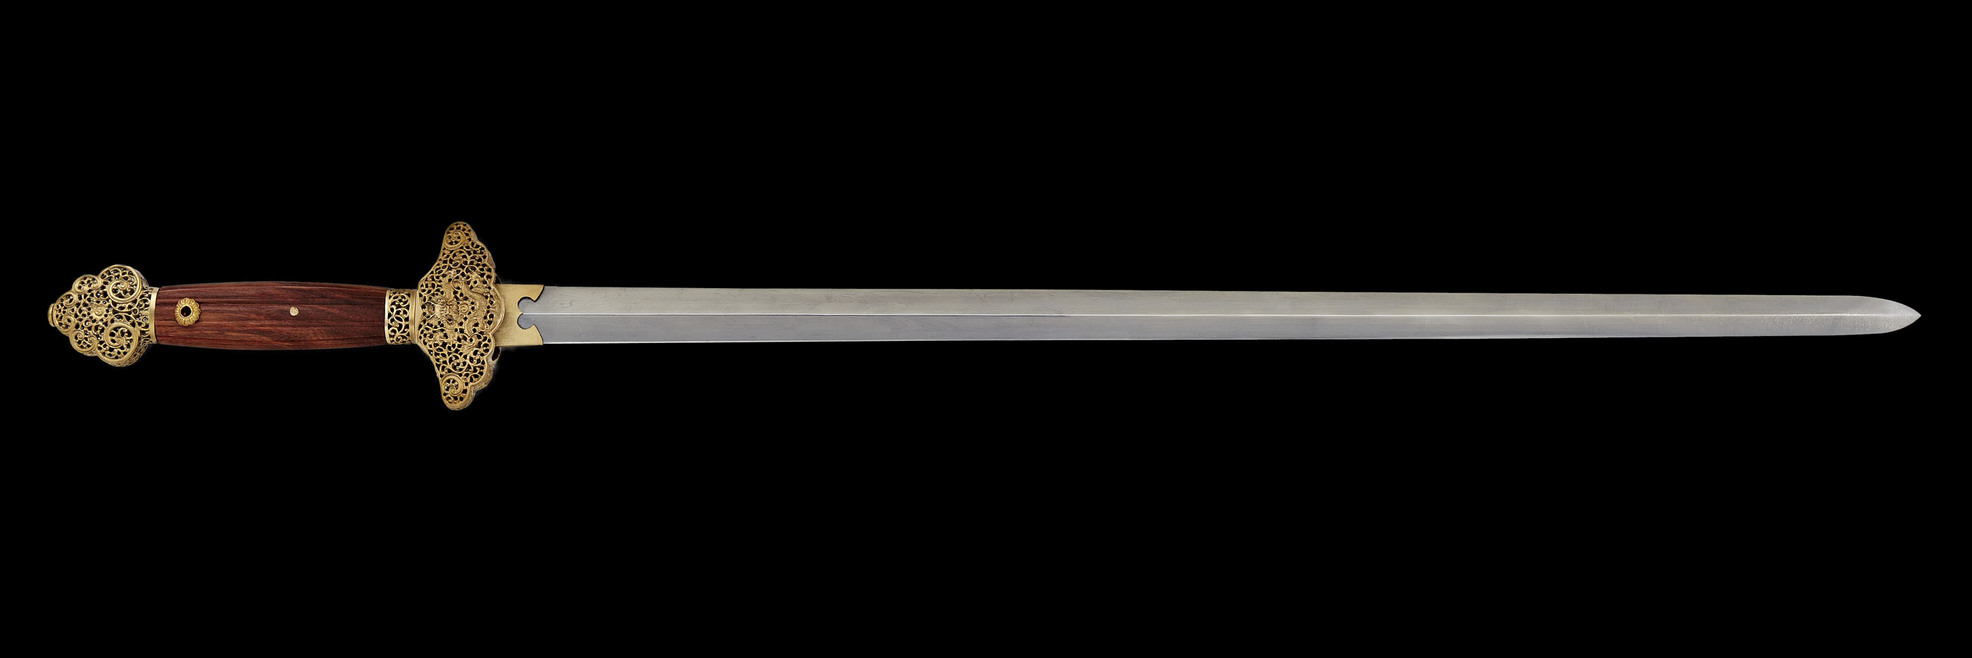 Qianglong Imperial Schwert